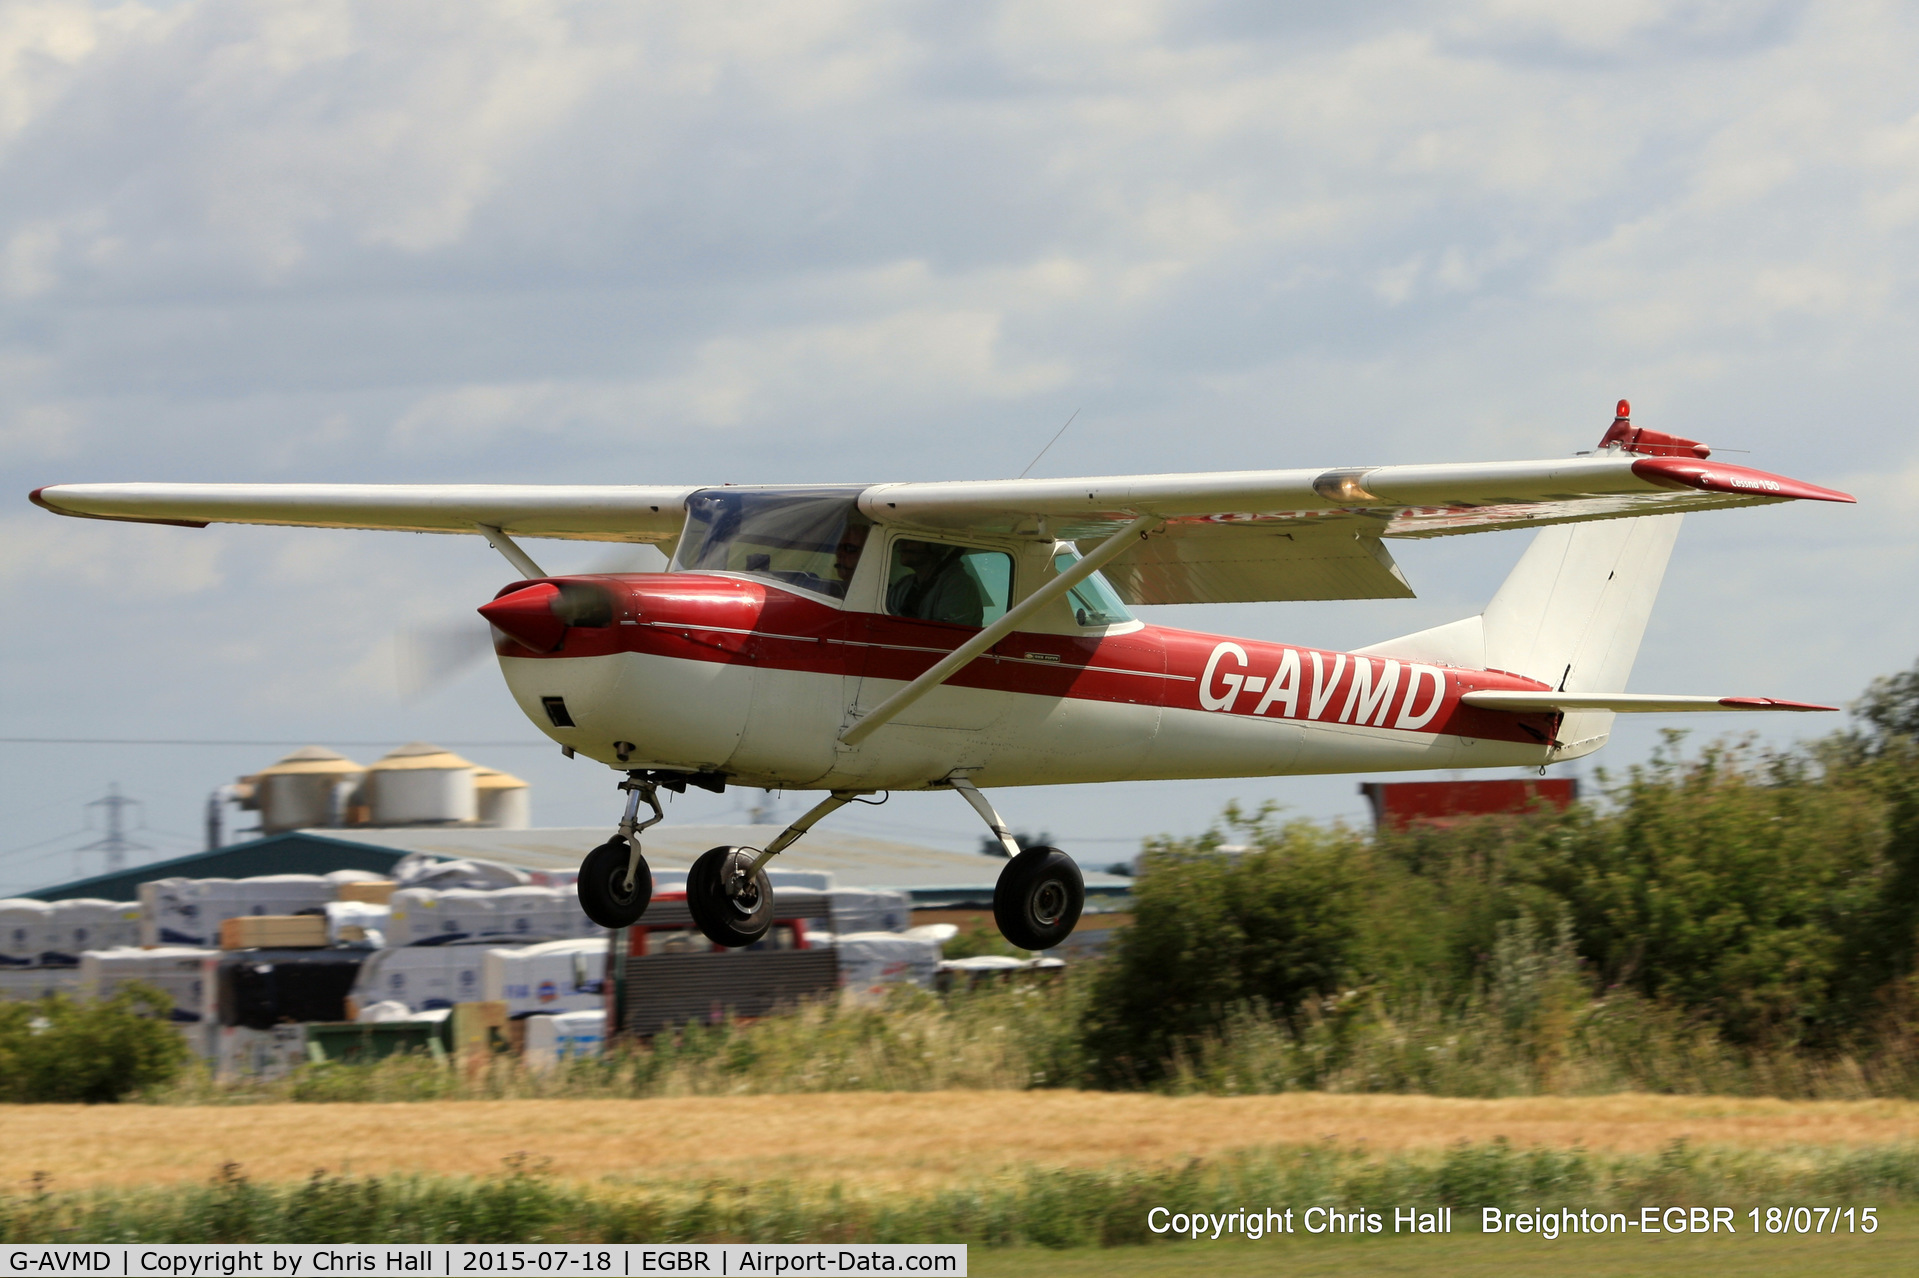 G-AVMD, 1966 Cessna 150G C/N 150-65504, International Bucker Fest at Breighton